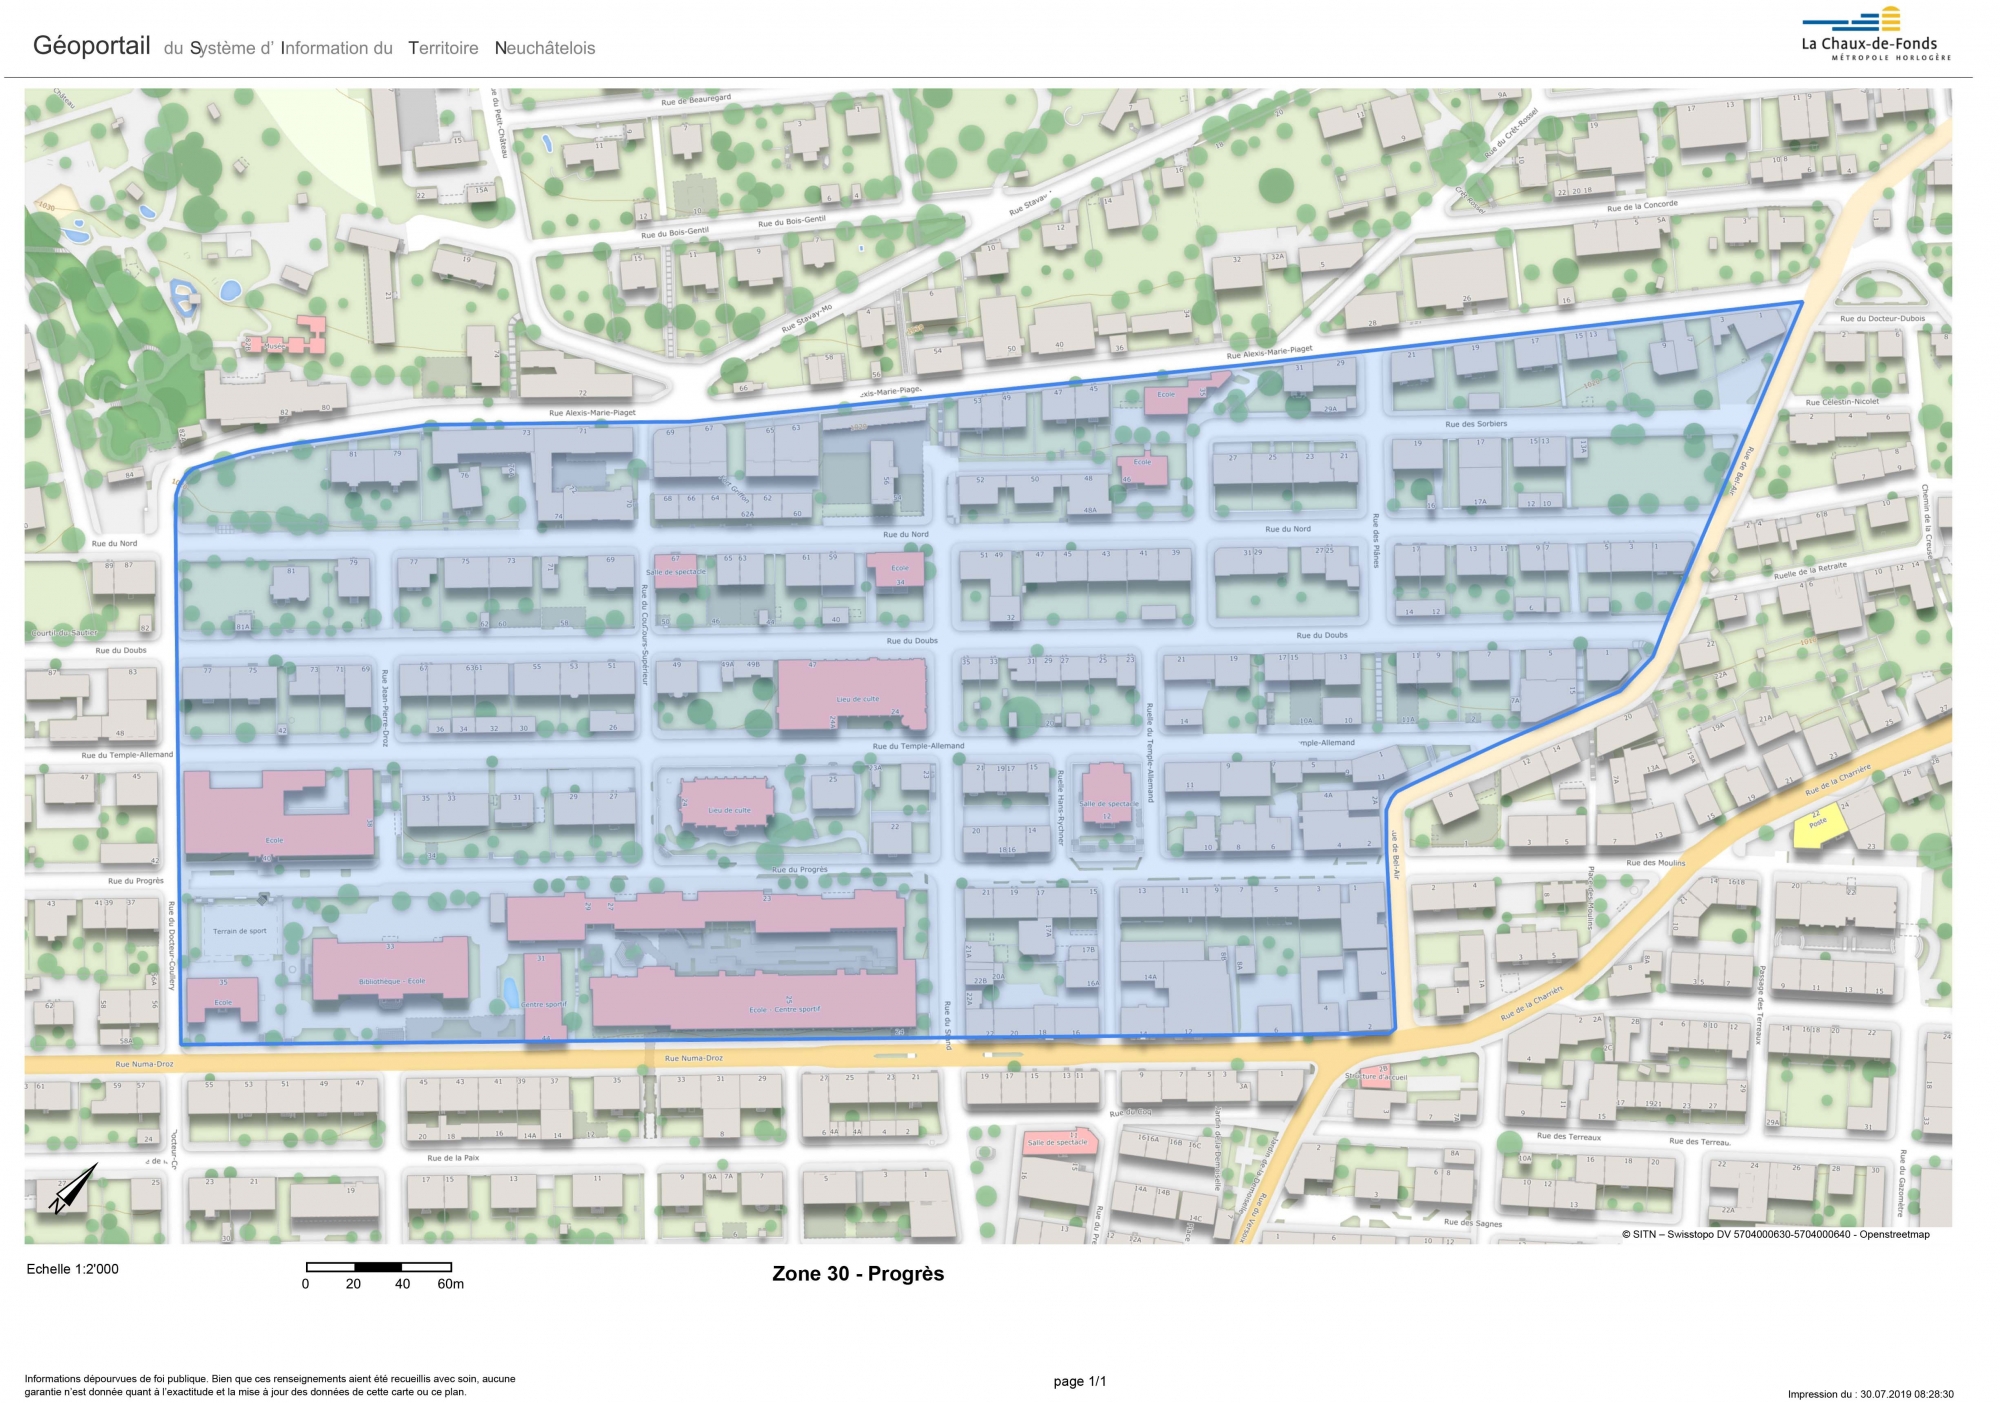 La zone 30 couvre le périmètre délimité par les rues Alexis-Marie-Piaget (au nord), Bel-Air (à l’est), Numa-Droz (au sud) et Docteur Coullery (à l’ouest).